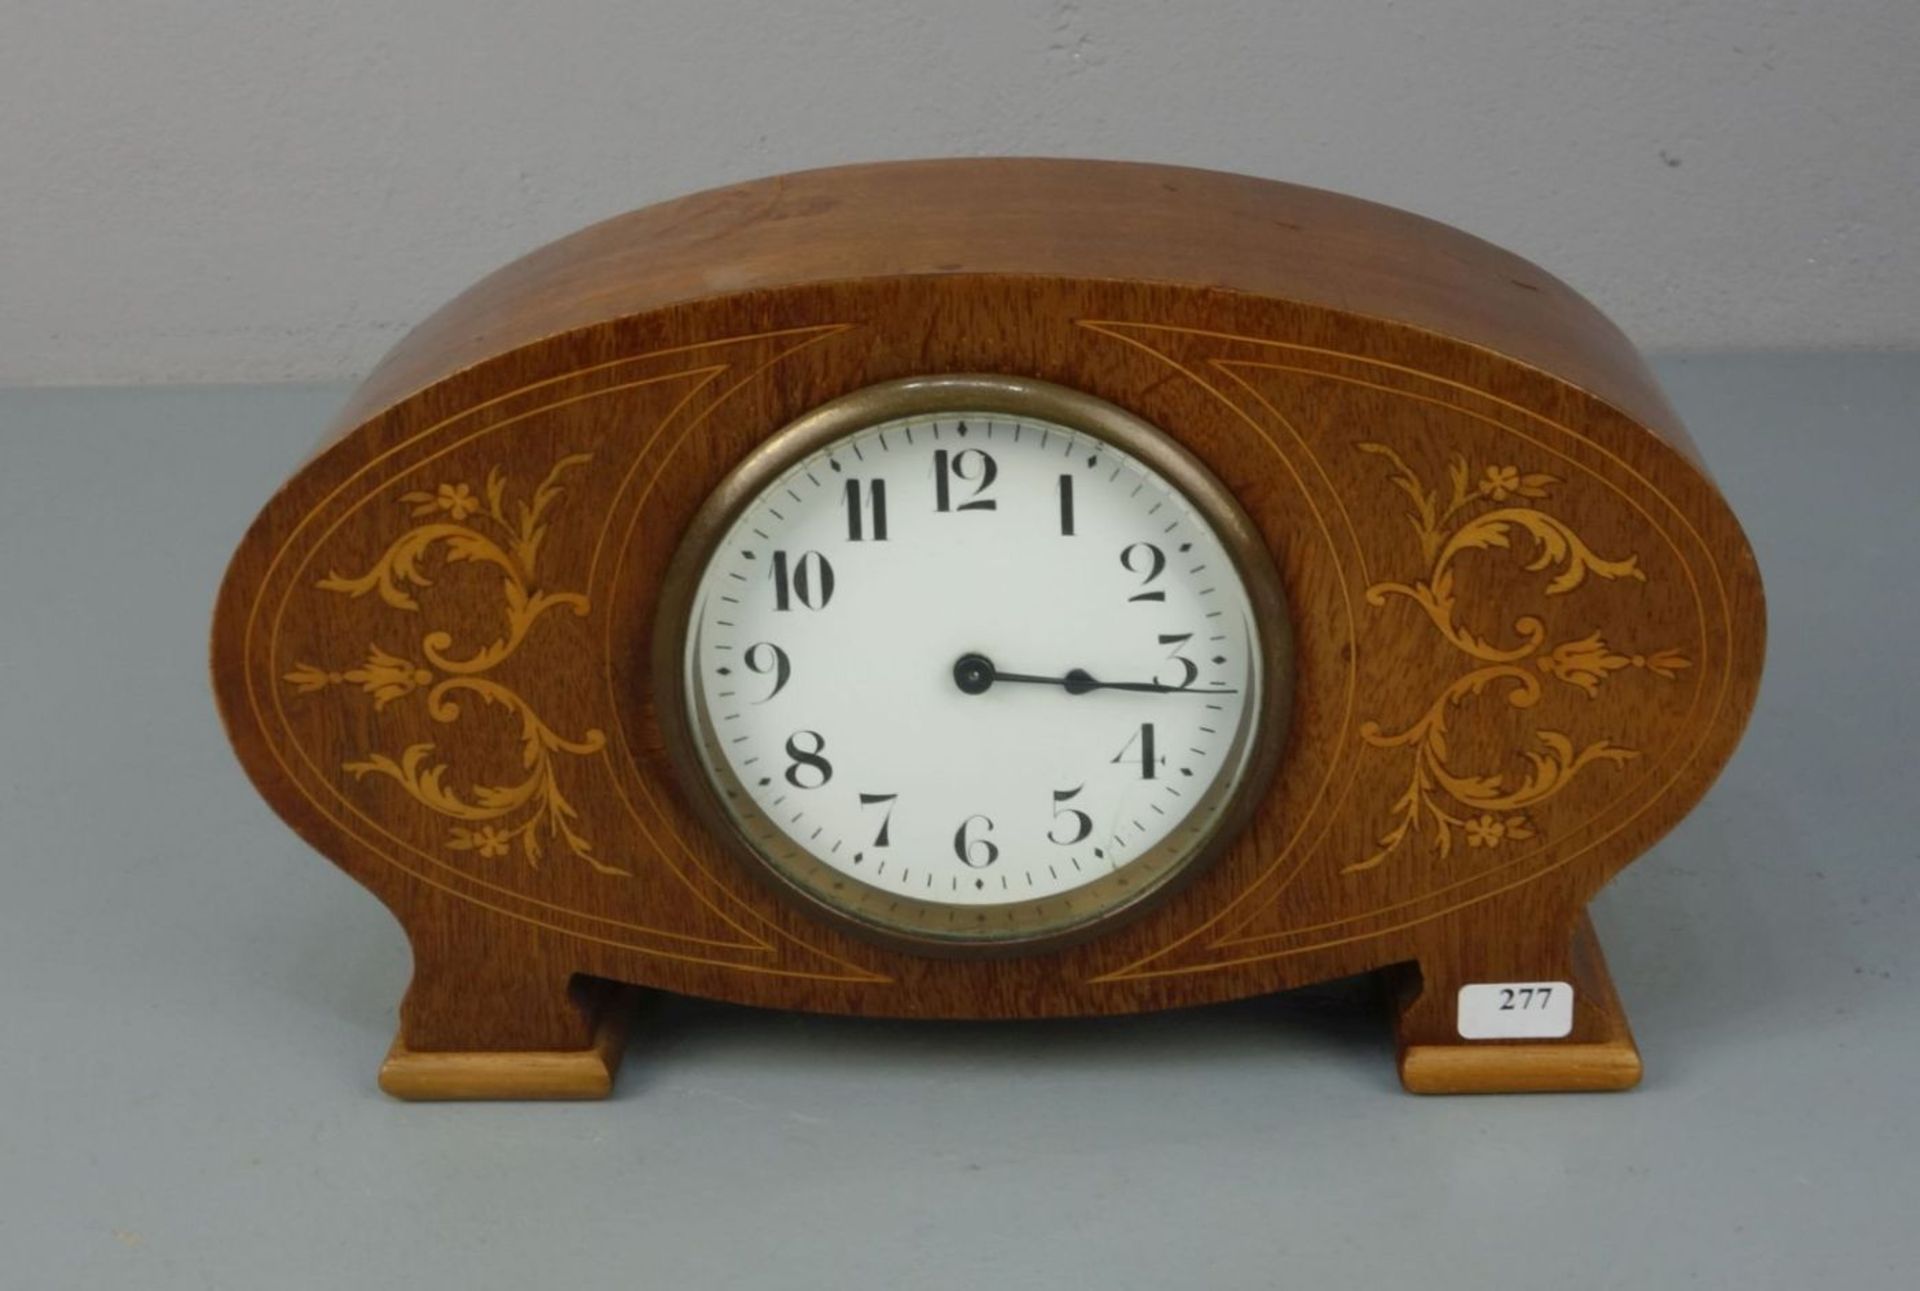 TISCHUHR / KAMINUHR / fire place clock, um 1920. Ovales Gehäuse auf zwei Füßen, dekoriert mit